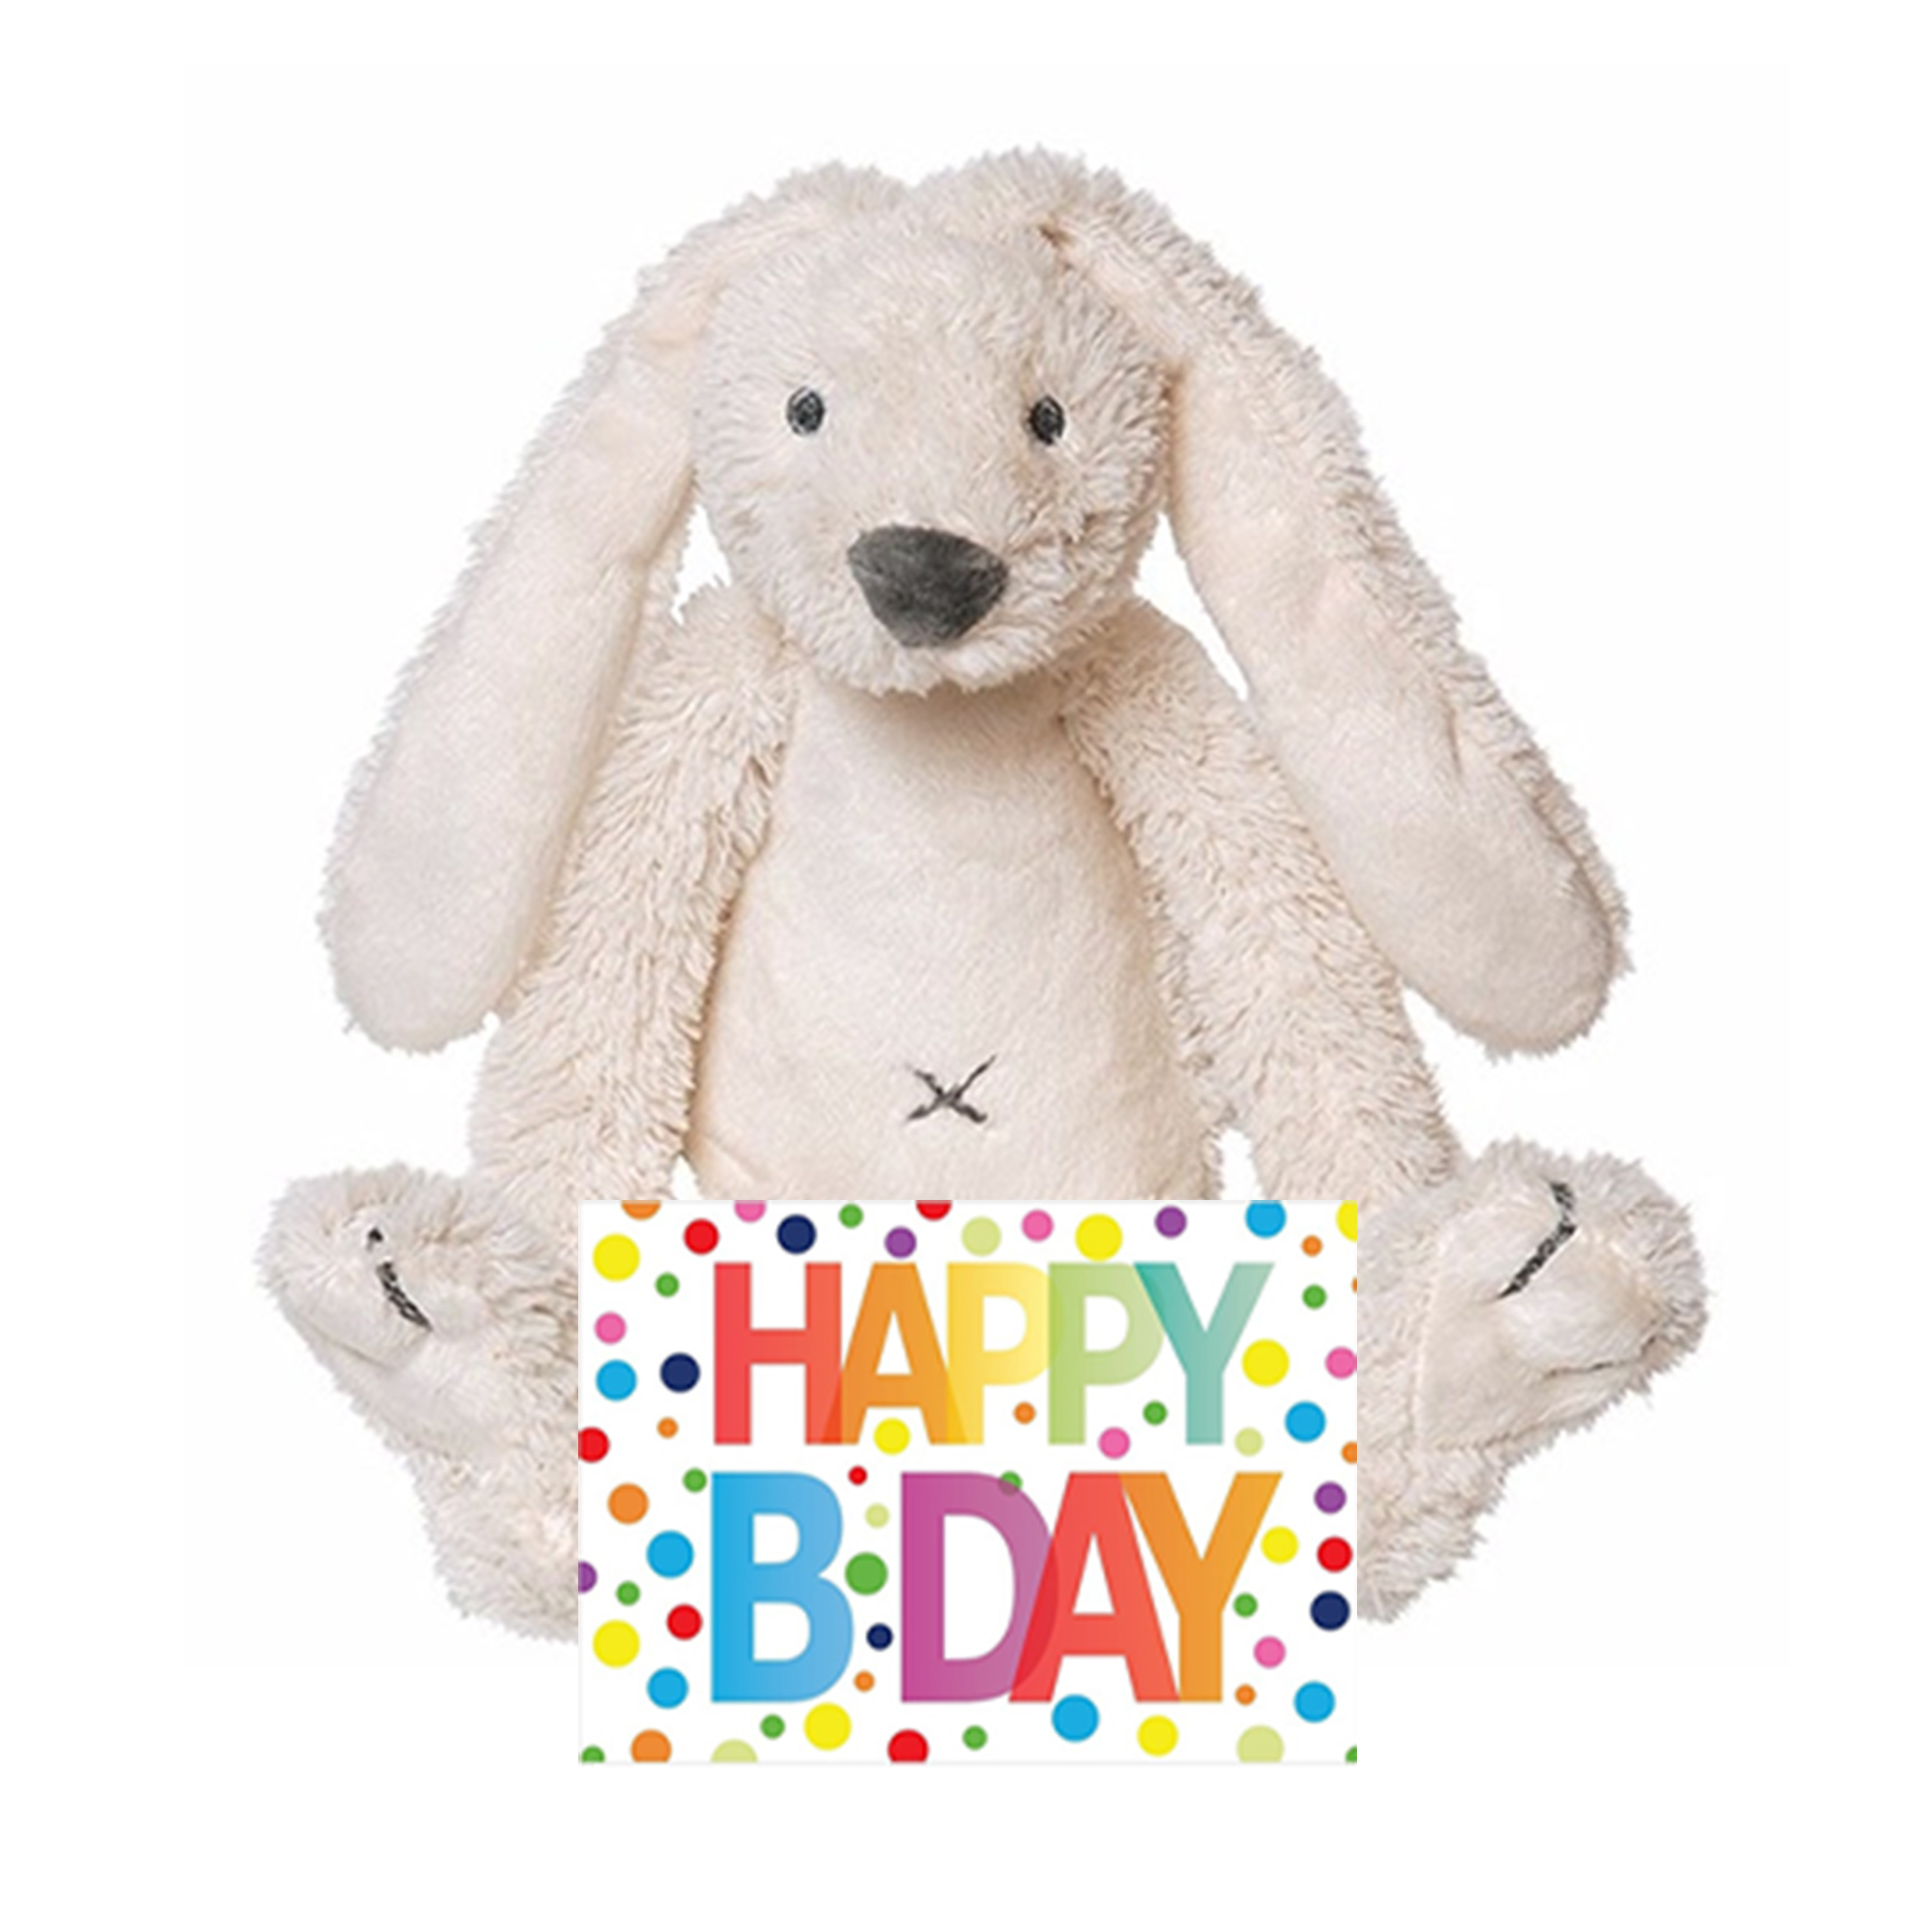 Afbeelding Kinder cadeau knuffel konijn met Happy birthday wenskaart door Animals Giftshop